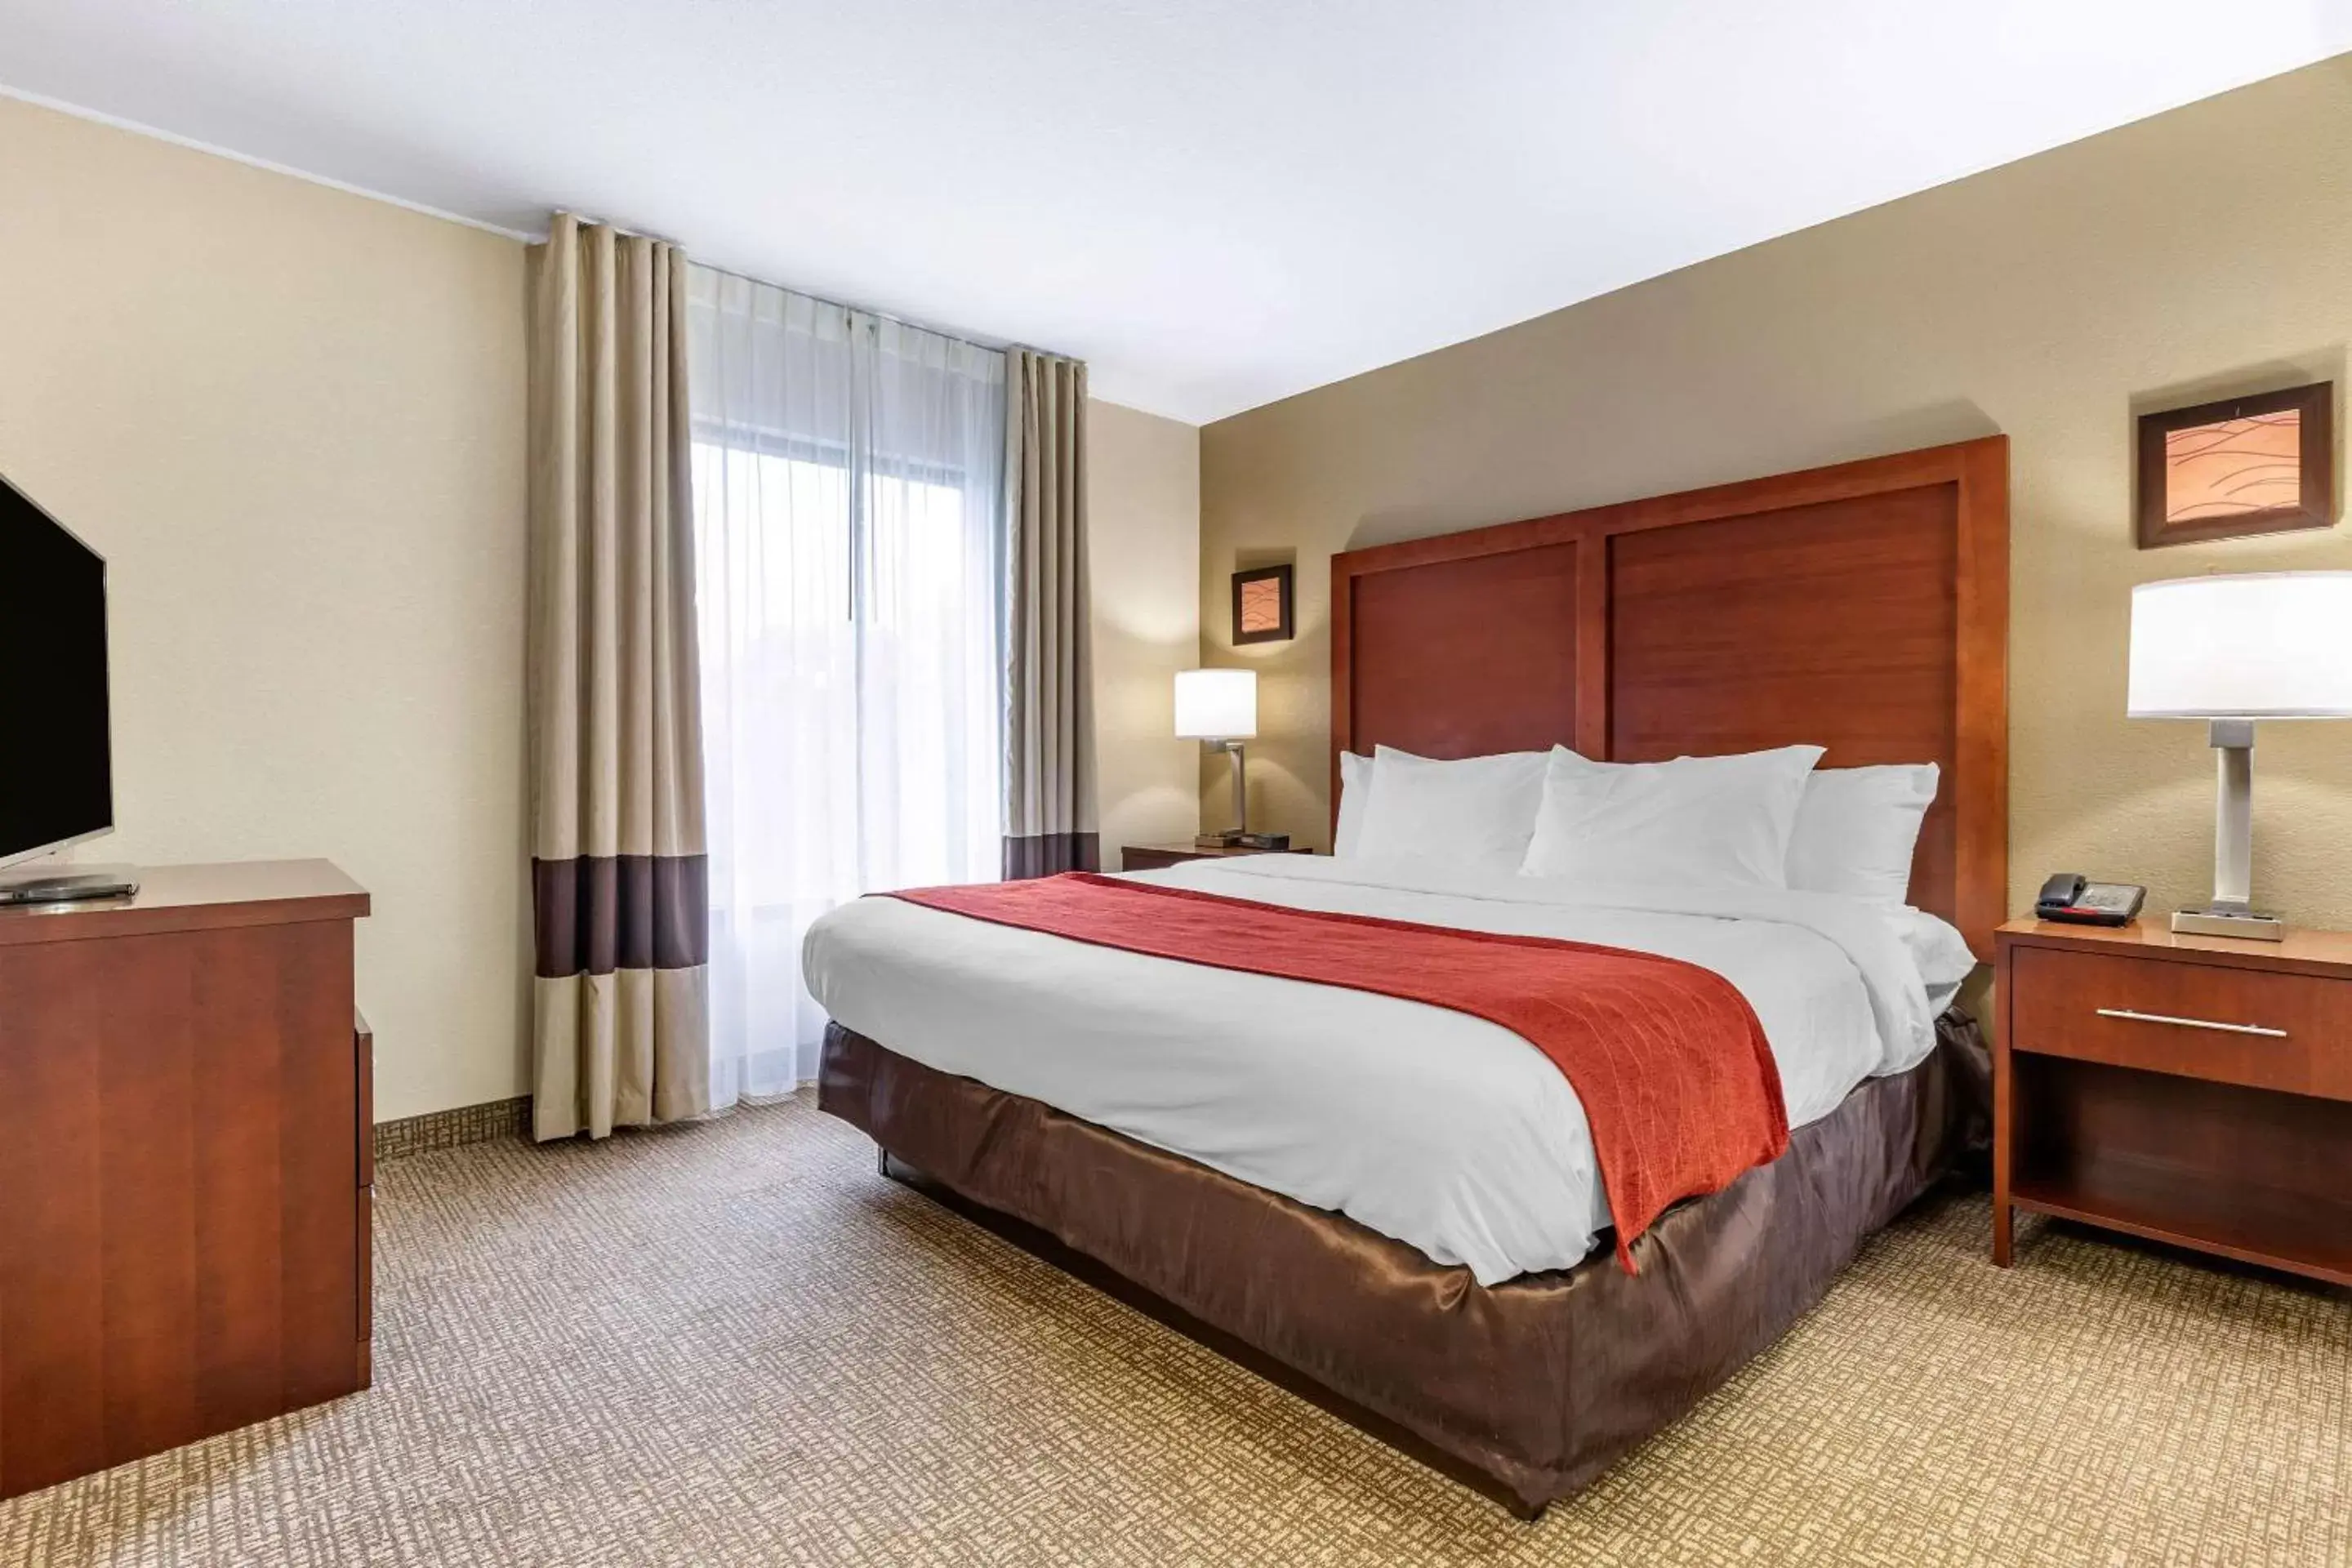 Bedroom, Bed in Comfort Inn & Suites Clemson - University Area